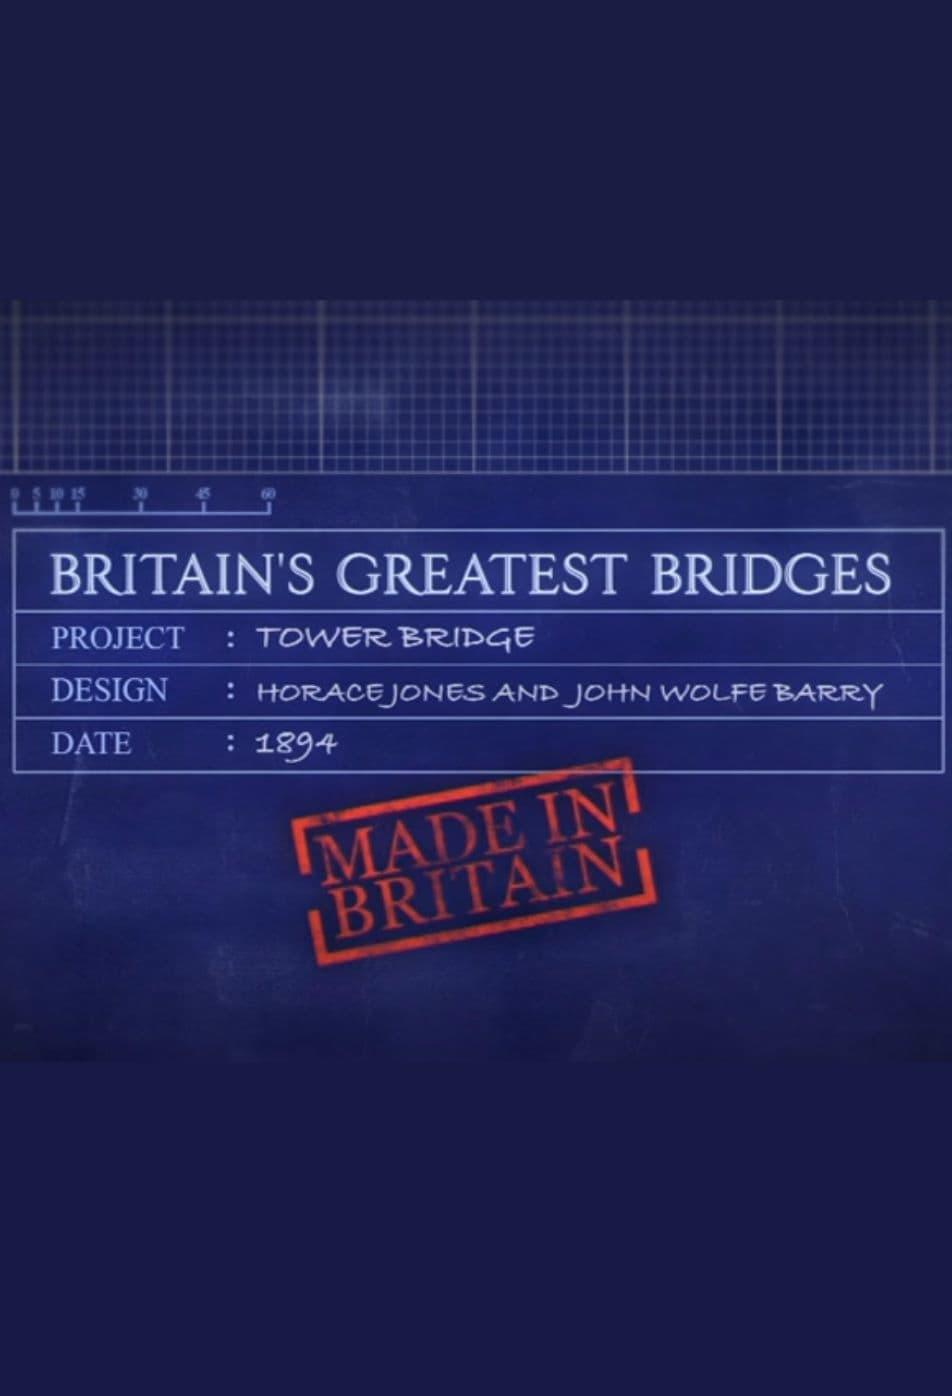 Britain's Greatest Bridges poster